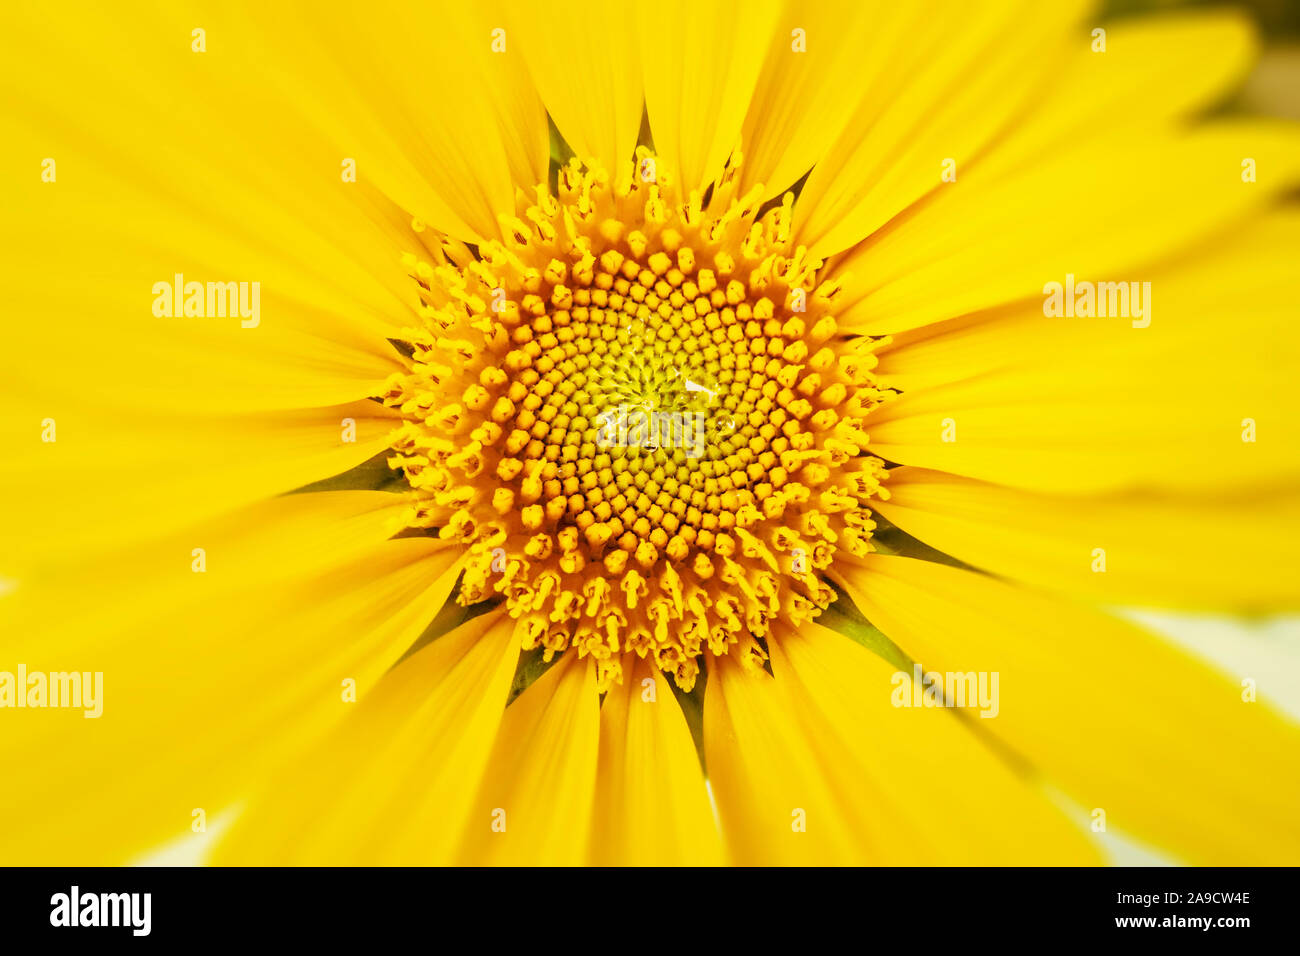 Ein Bild von einem typischen gelben Sonnenblume detail Stockfoto